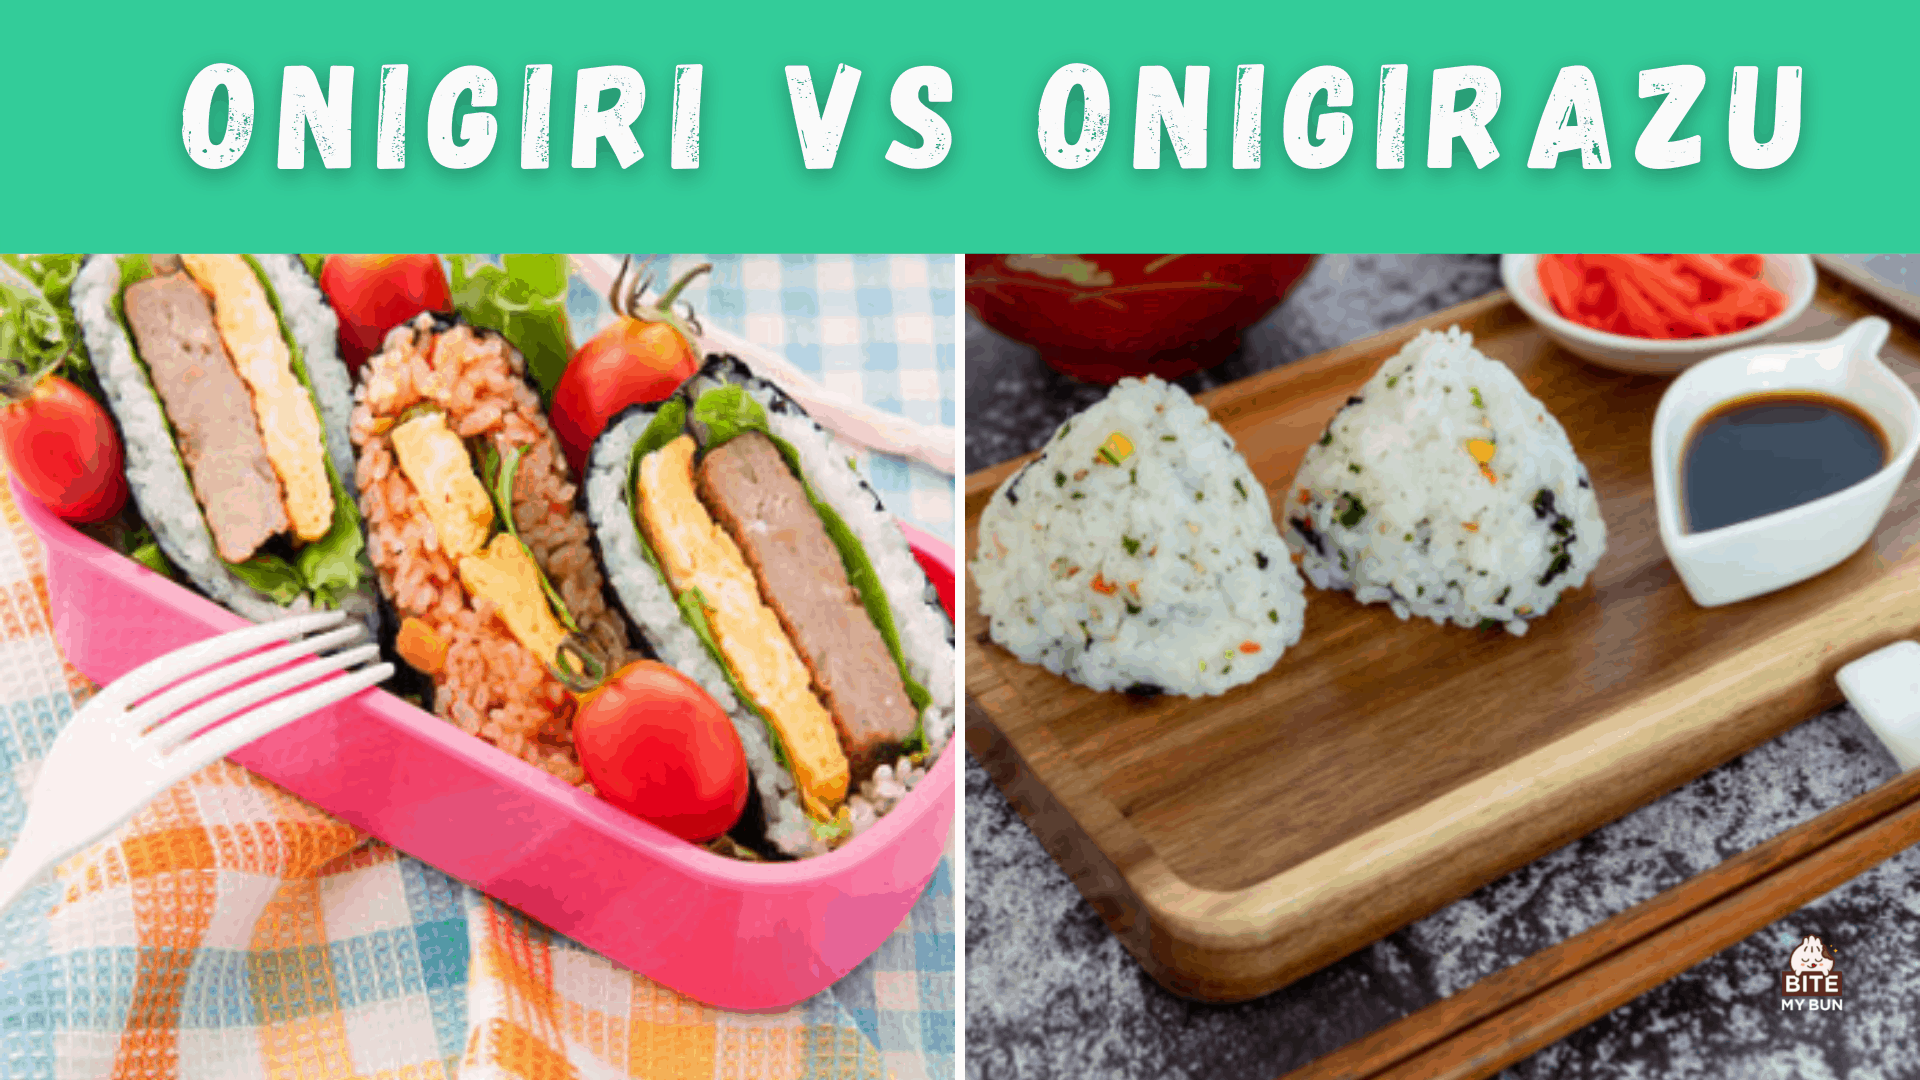 Onigiri versus onigirazu | Hoe ze verschillen en waarom je ze allebei wilt proberen